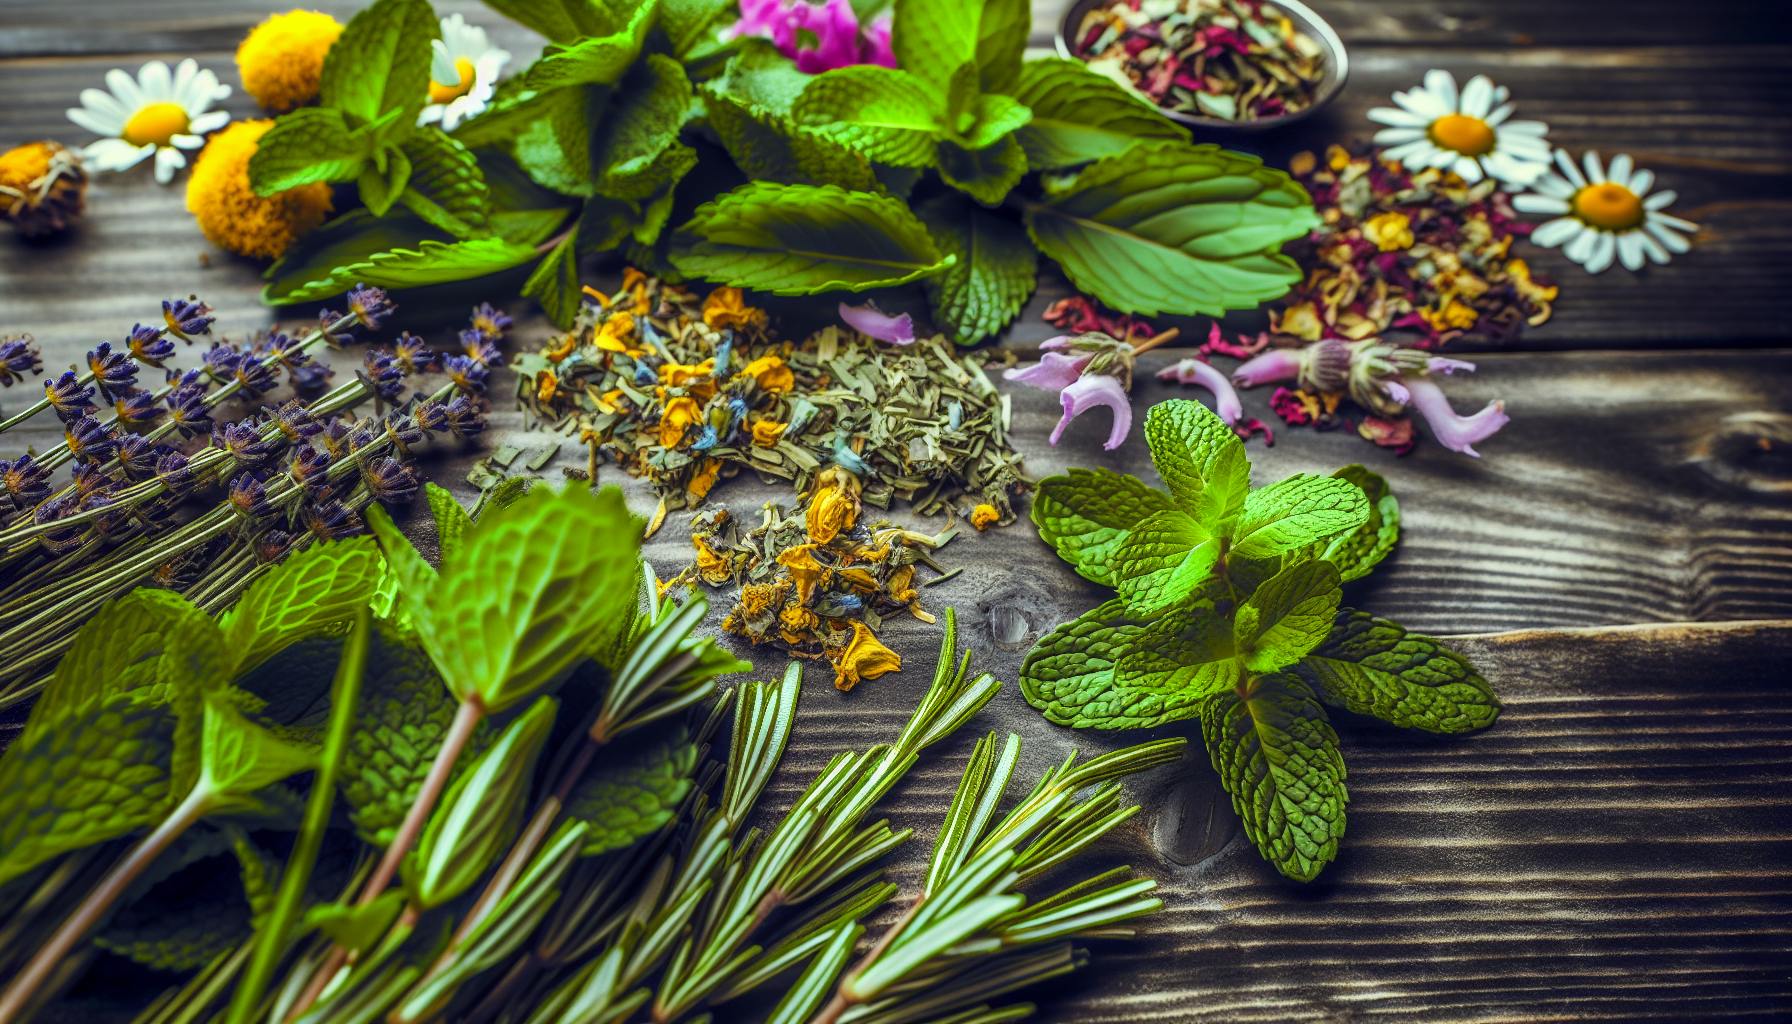 Variety of herbs and flowers used in herbal teas